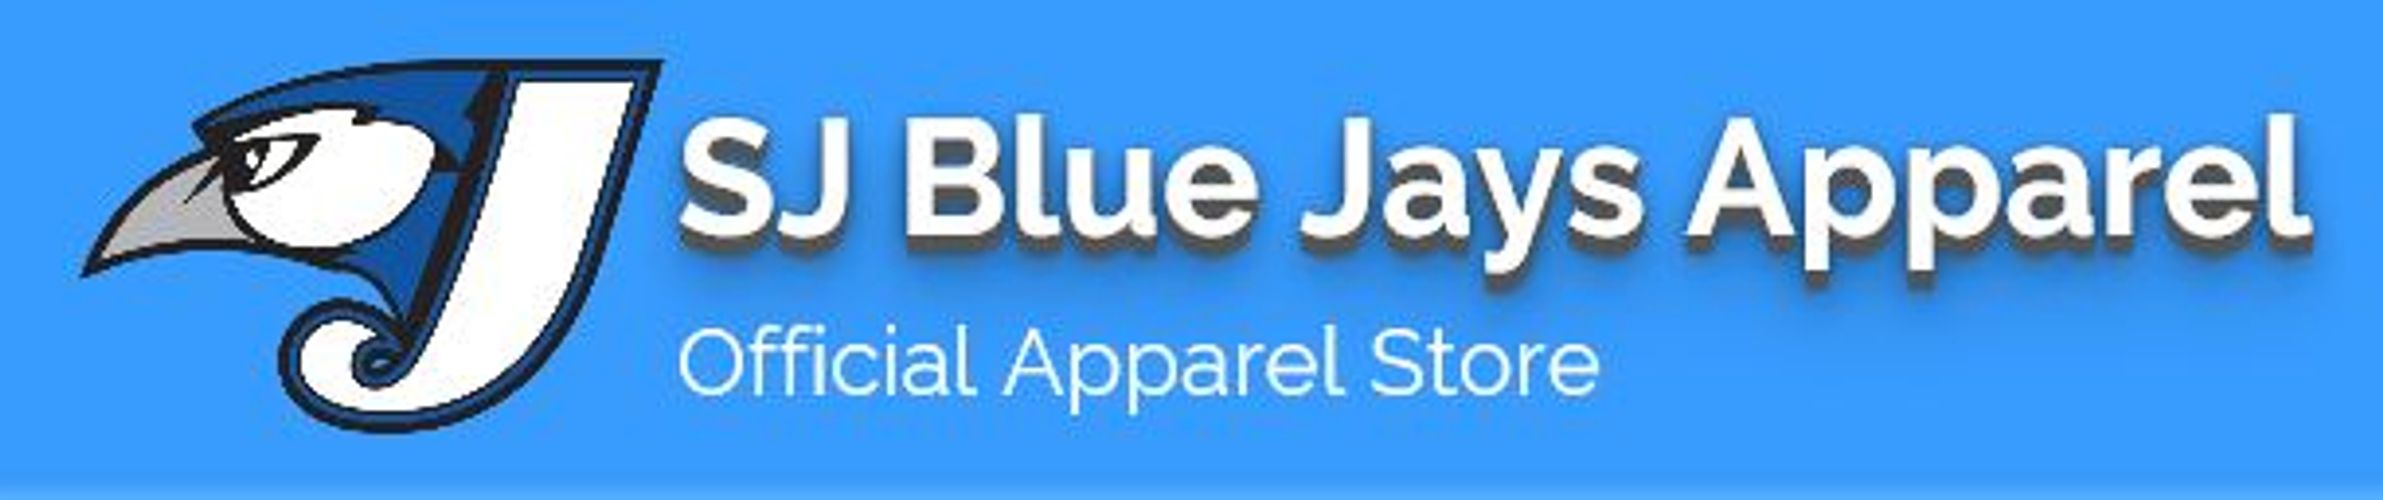 South Jersey Blue Jays Baseball/Softball Organization